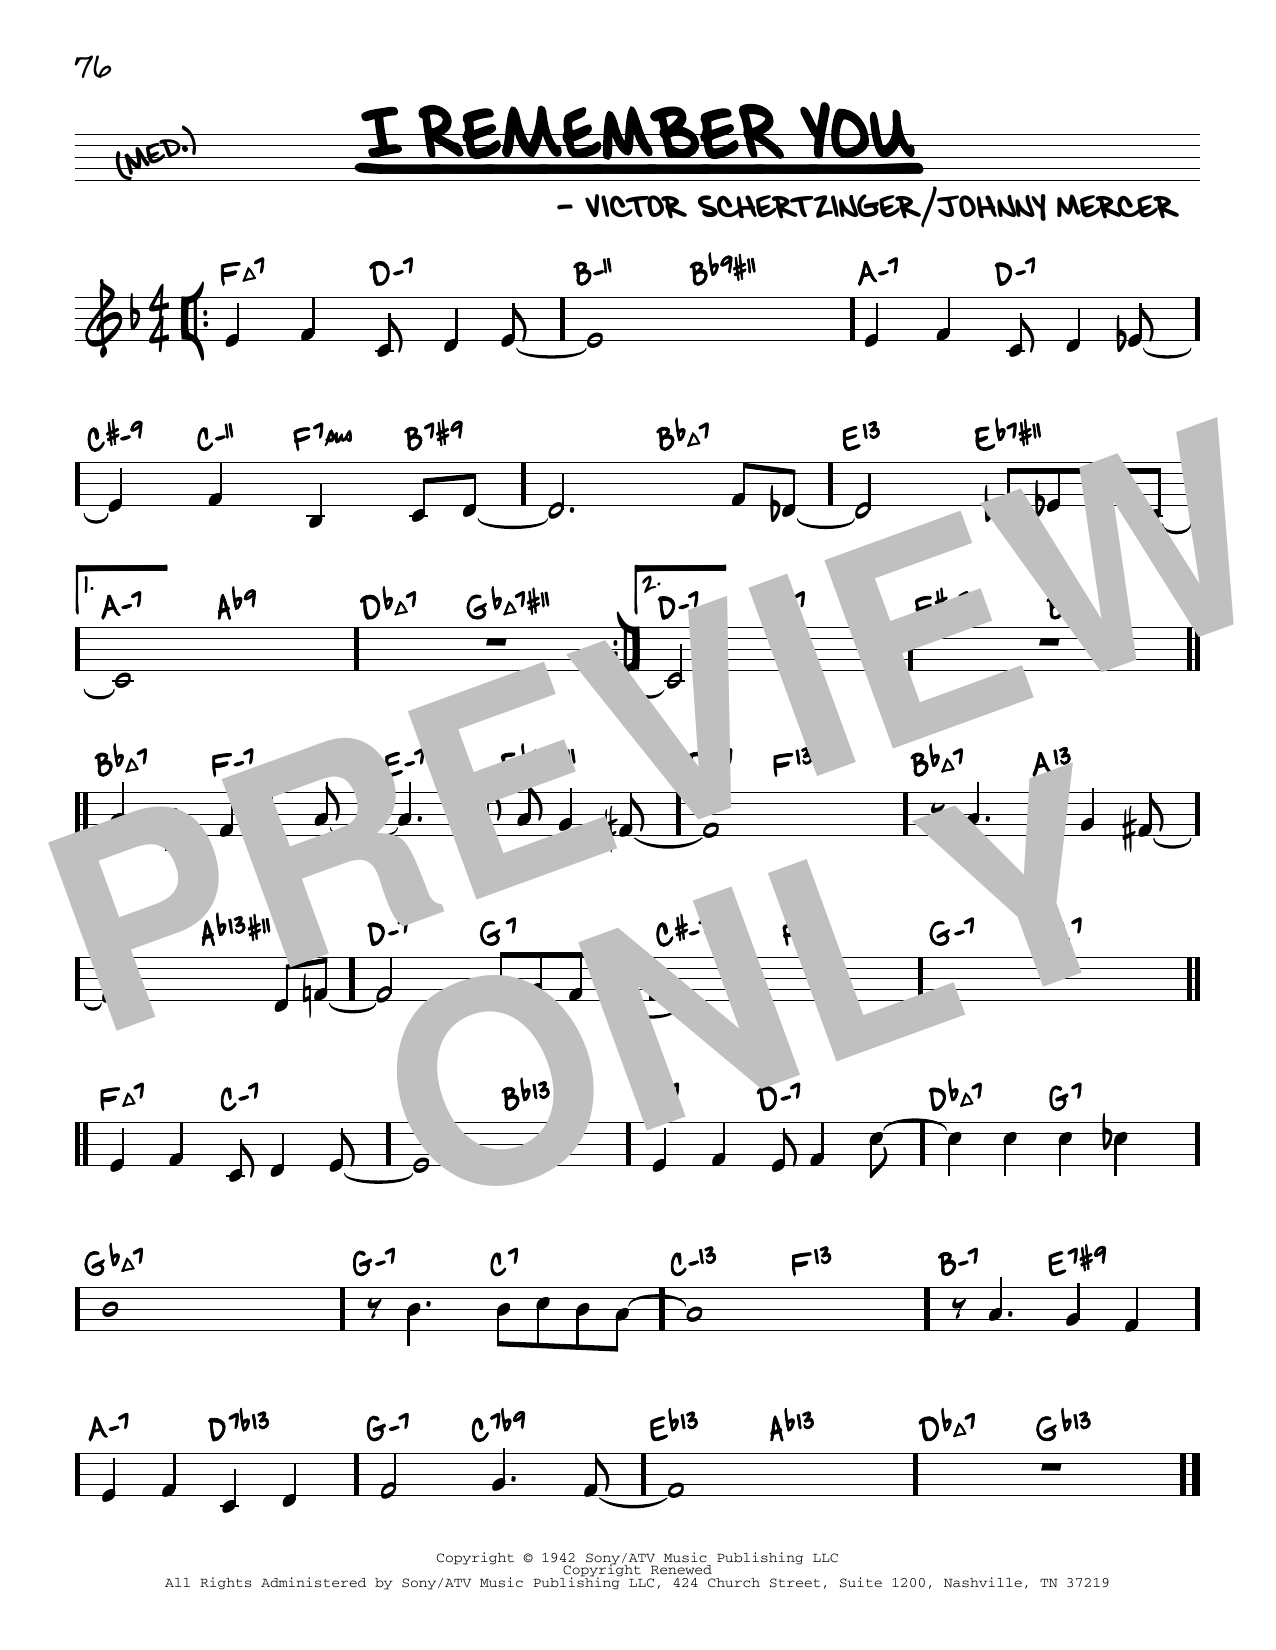 Victor Schertzinger I Remember You (arr. David Hazeltine) Sheet Music Notes & Chords for Real Book – Enhanced Chords - Download or Print PDF